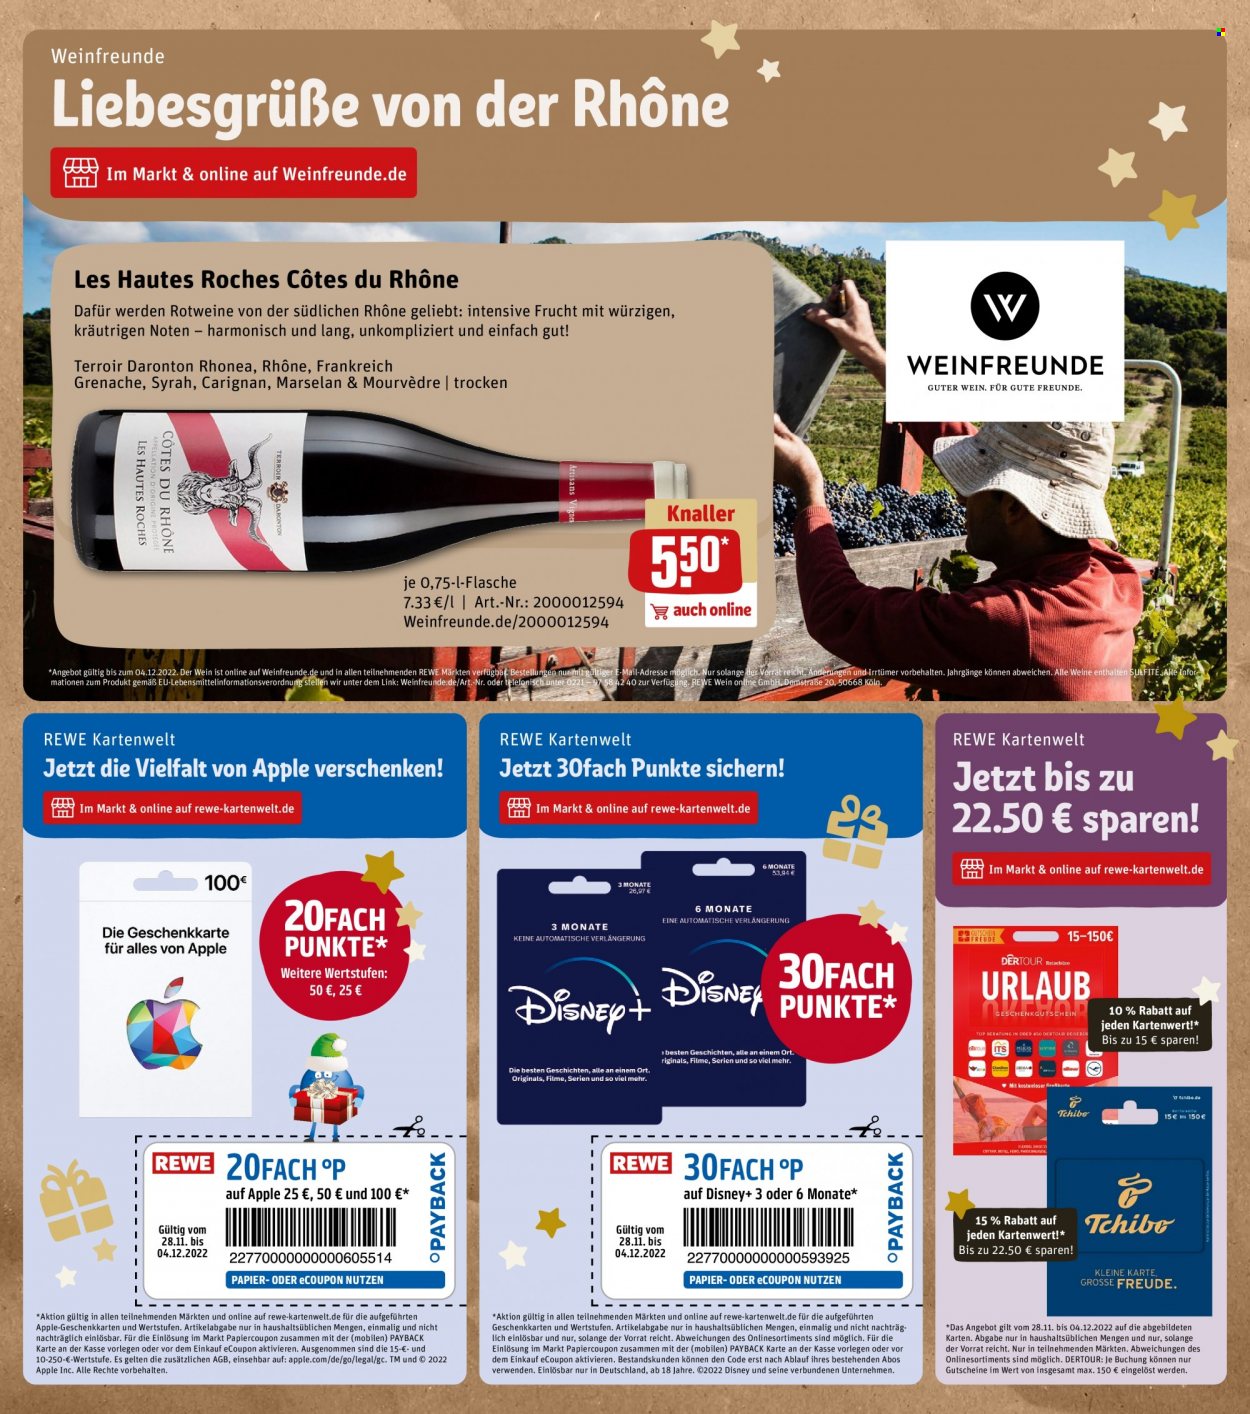 thumbnail - REWE tilbud  - 28.11.2022 - 3.12.2022 - tilbudsprodukter - Côtes du Rhône, vin. Side 22.